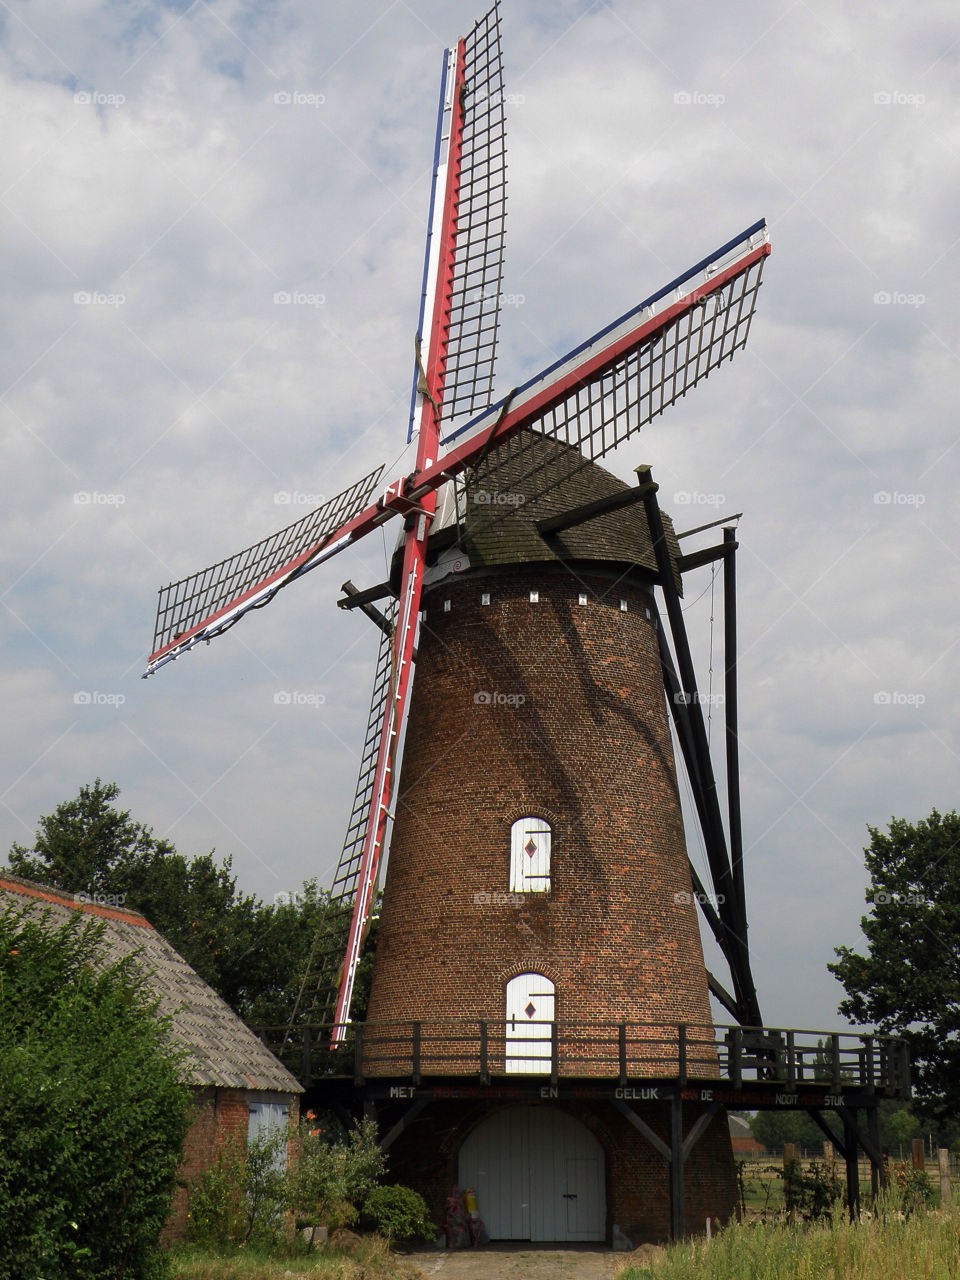 The windmill...